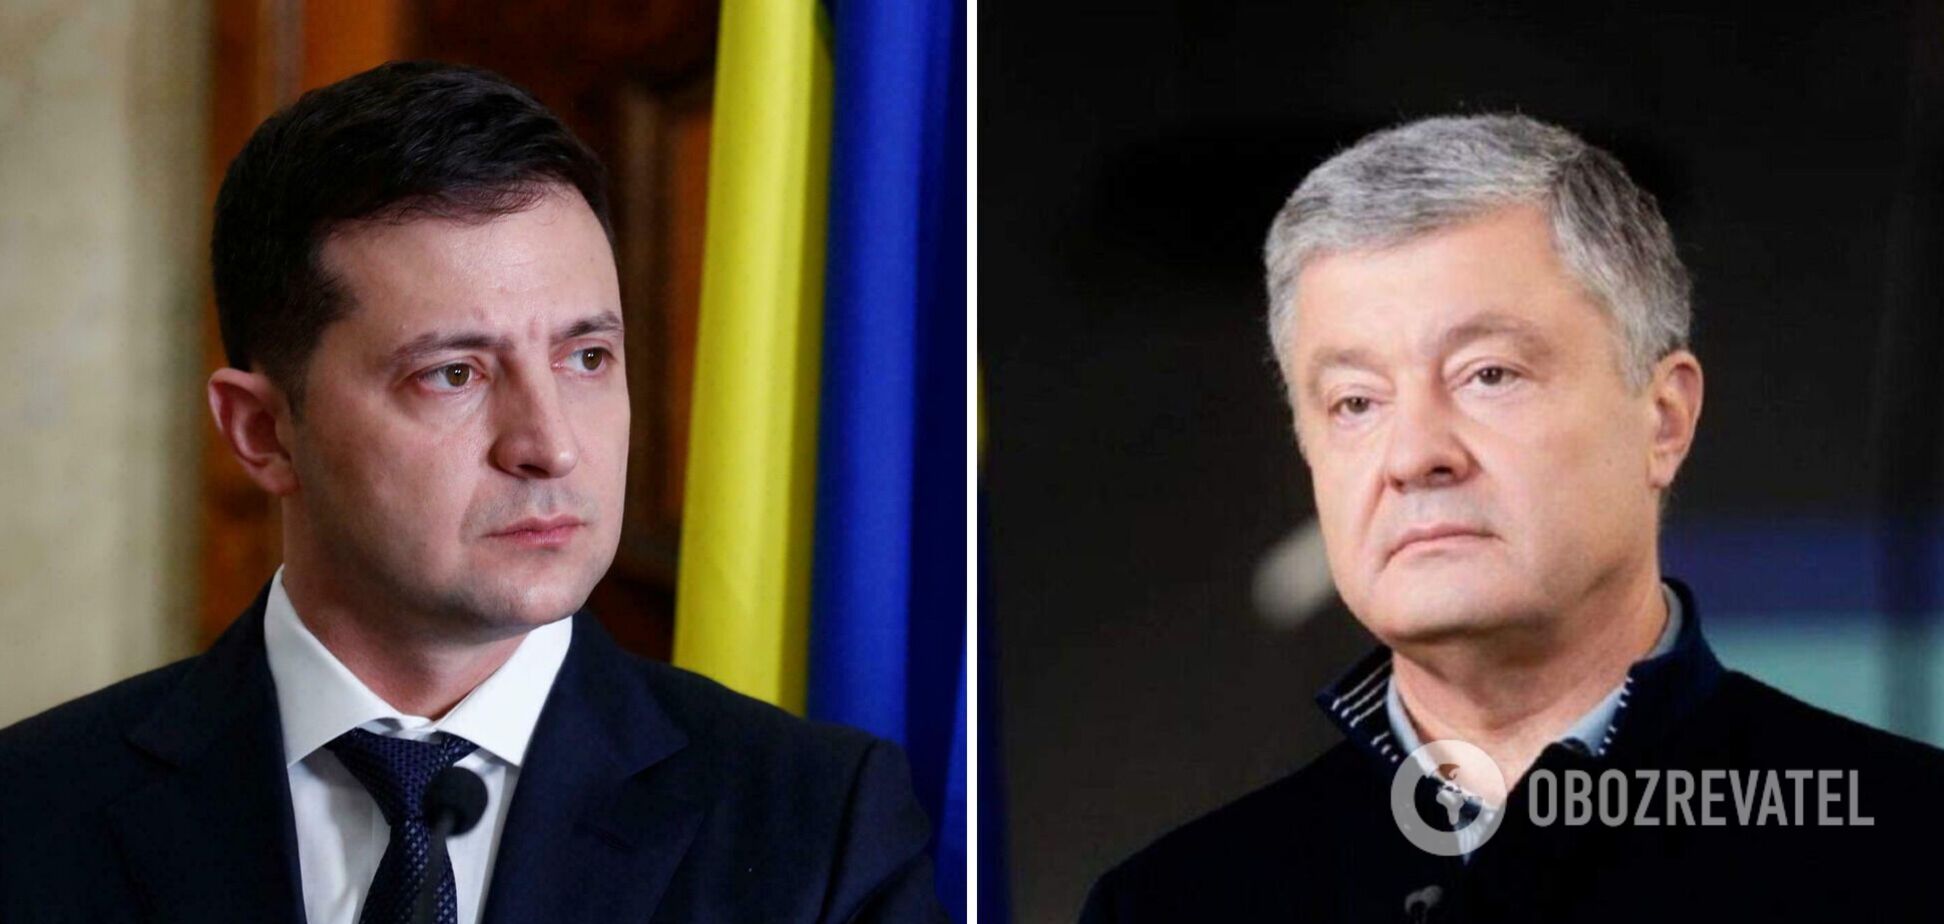 Запад понимает, что Порошенко преследуют как политического конкурента, – журналист Цымбалюк